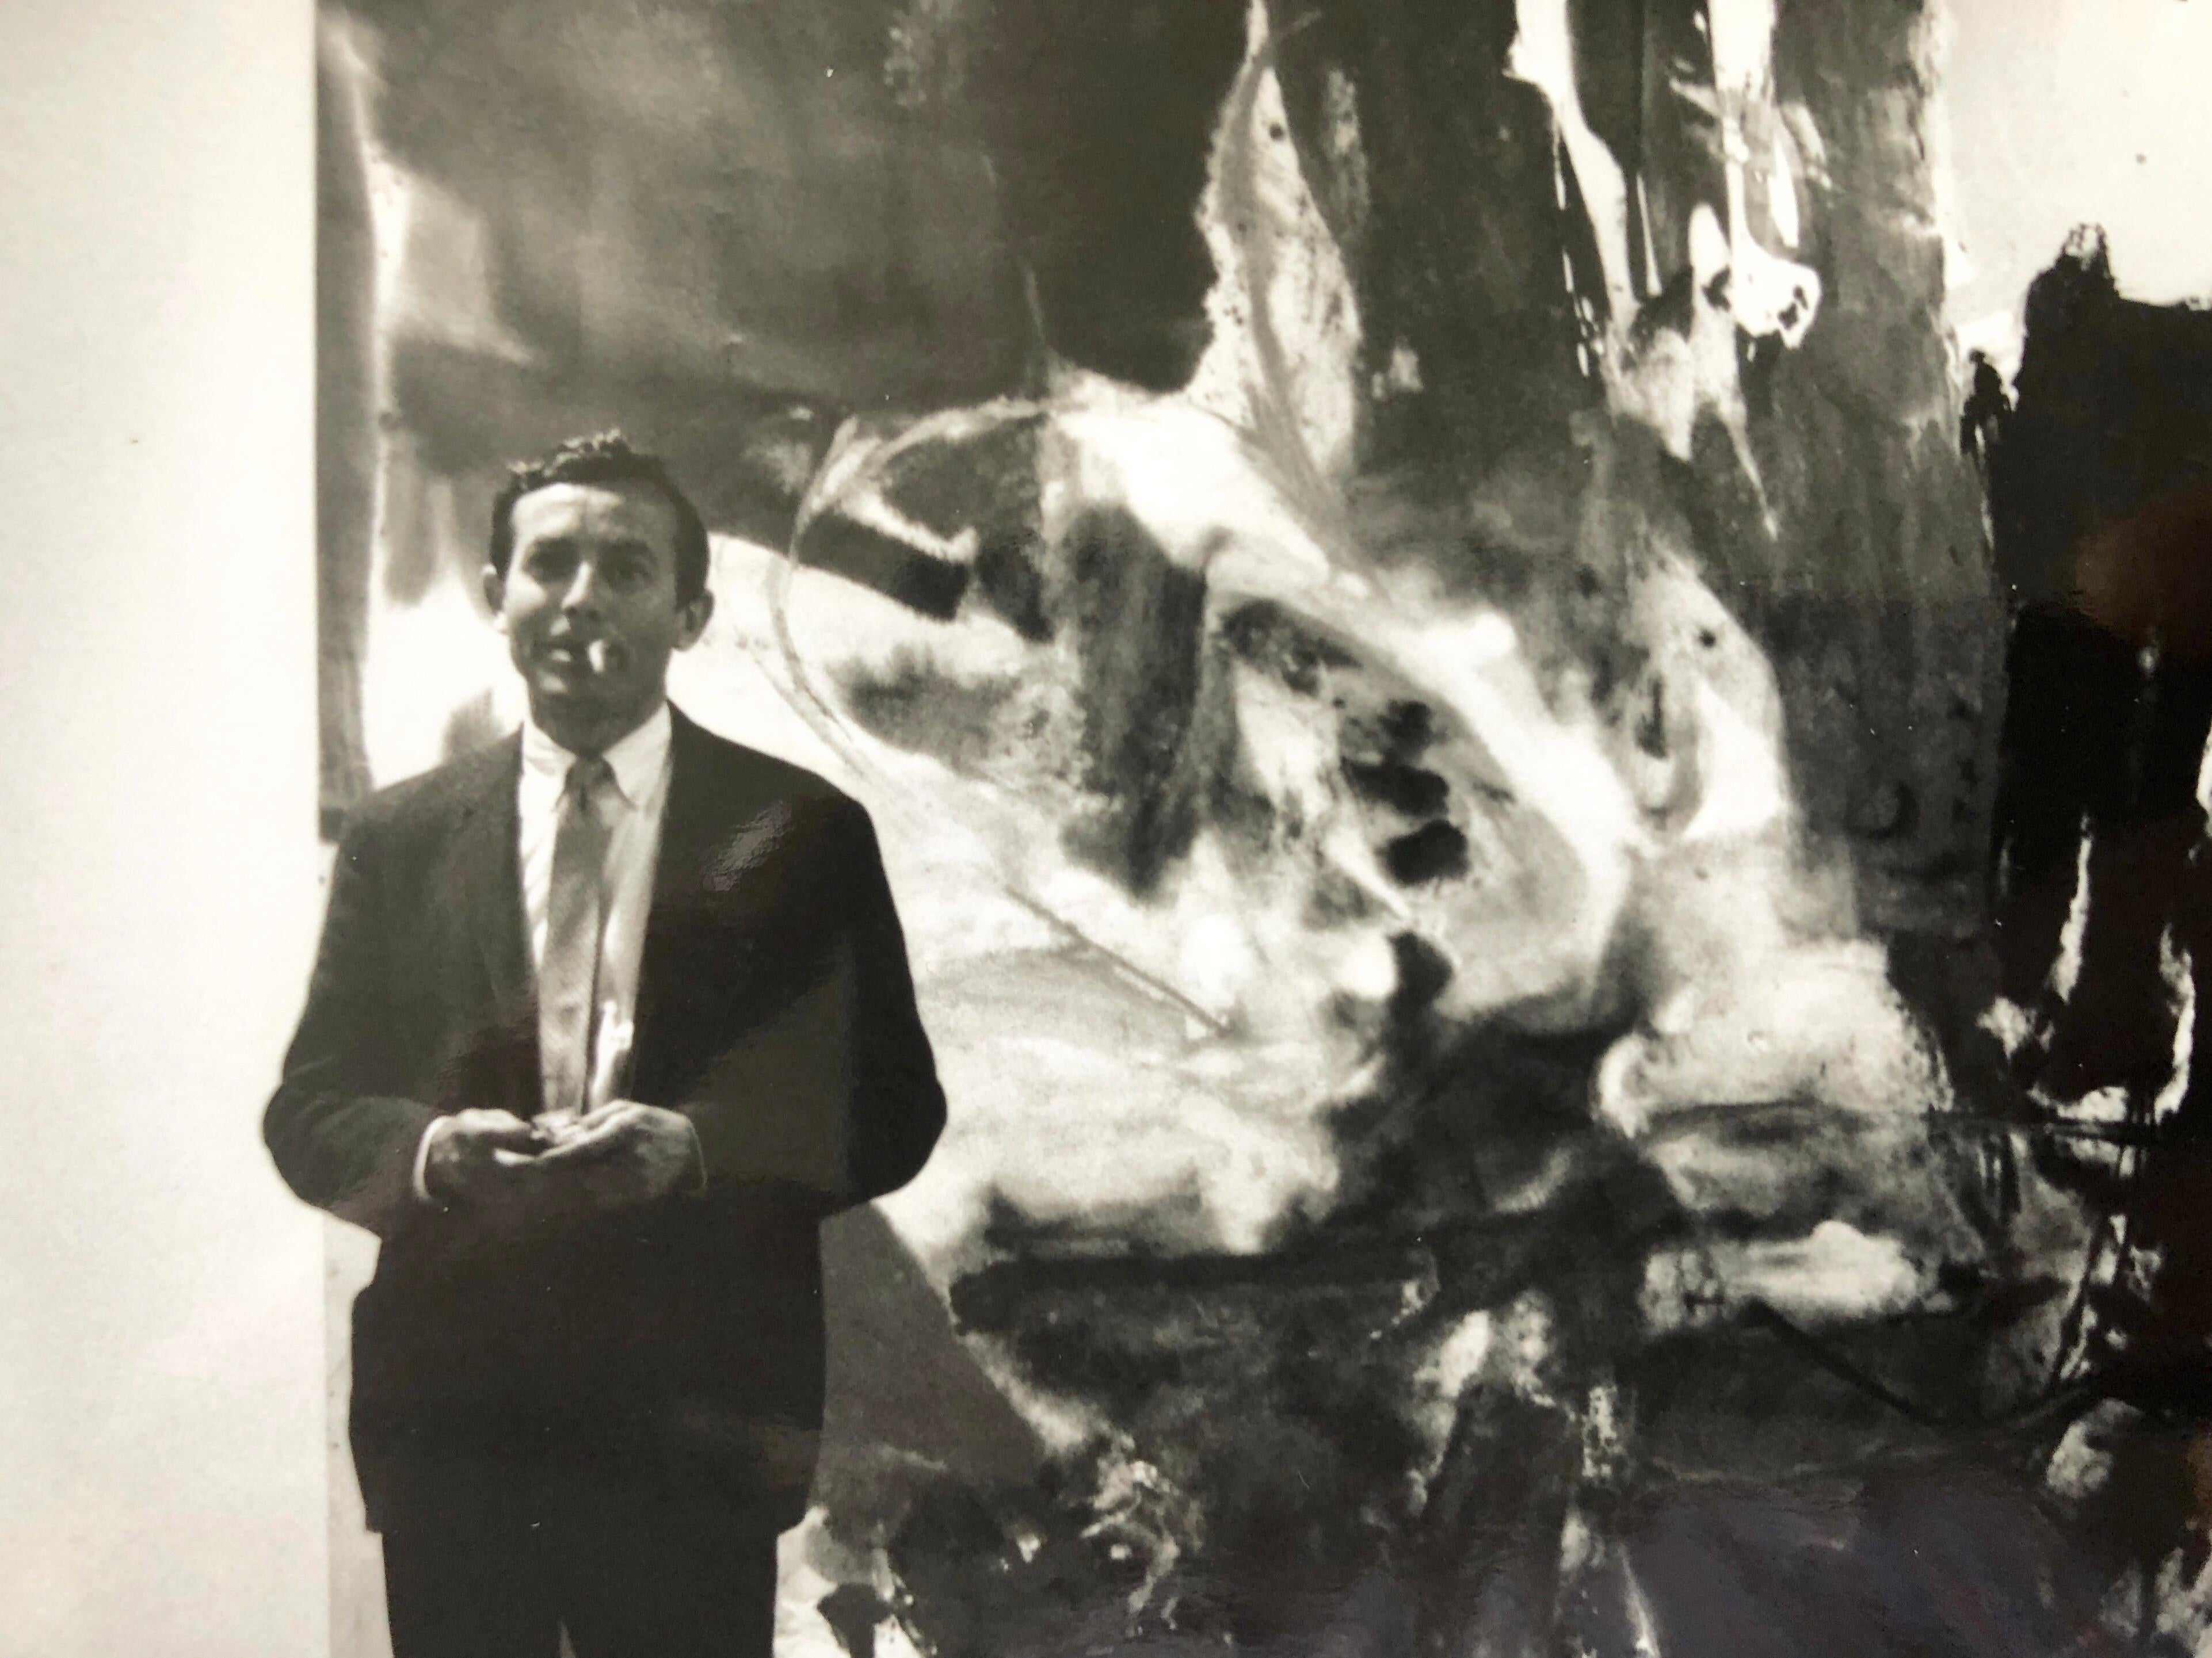  Il s'agit d'une photo de Friedl Dzubas (expressionniste abstrait) à la galerie Castelli, signée à l'encre et avec le cachet du photographe au verso et un titre écrit à la main....

Sur une période de 50 ans, McDarrah a documenté l'essor de la Beat